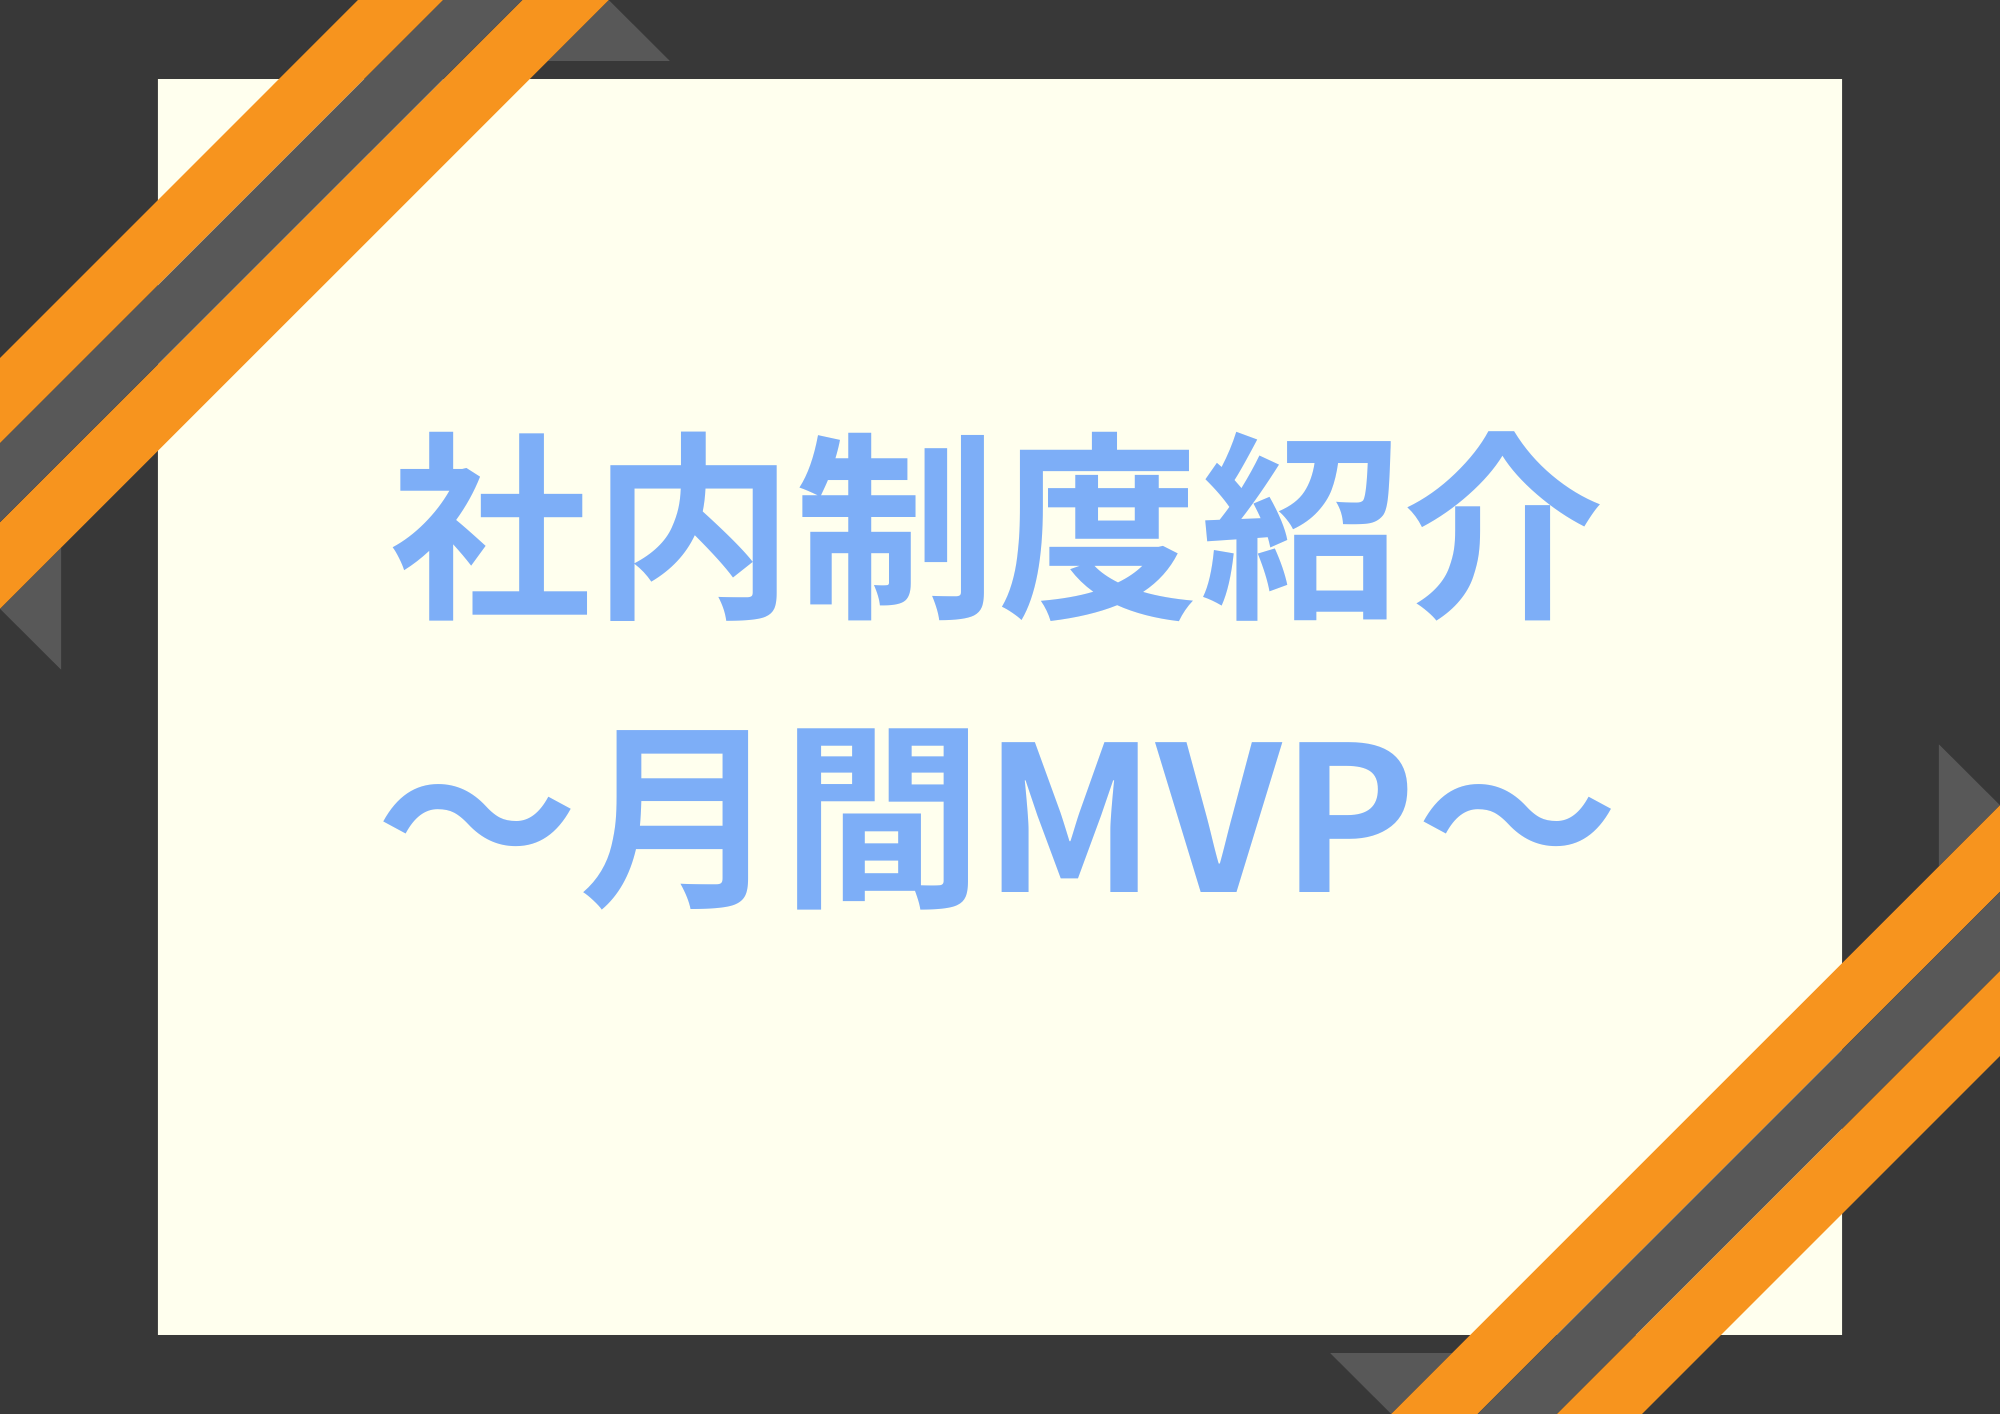 社内制度紹介～月間MVP～